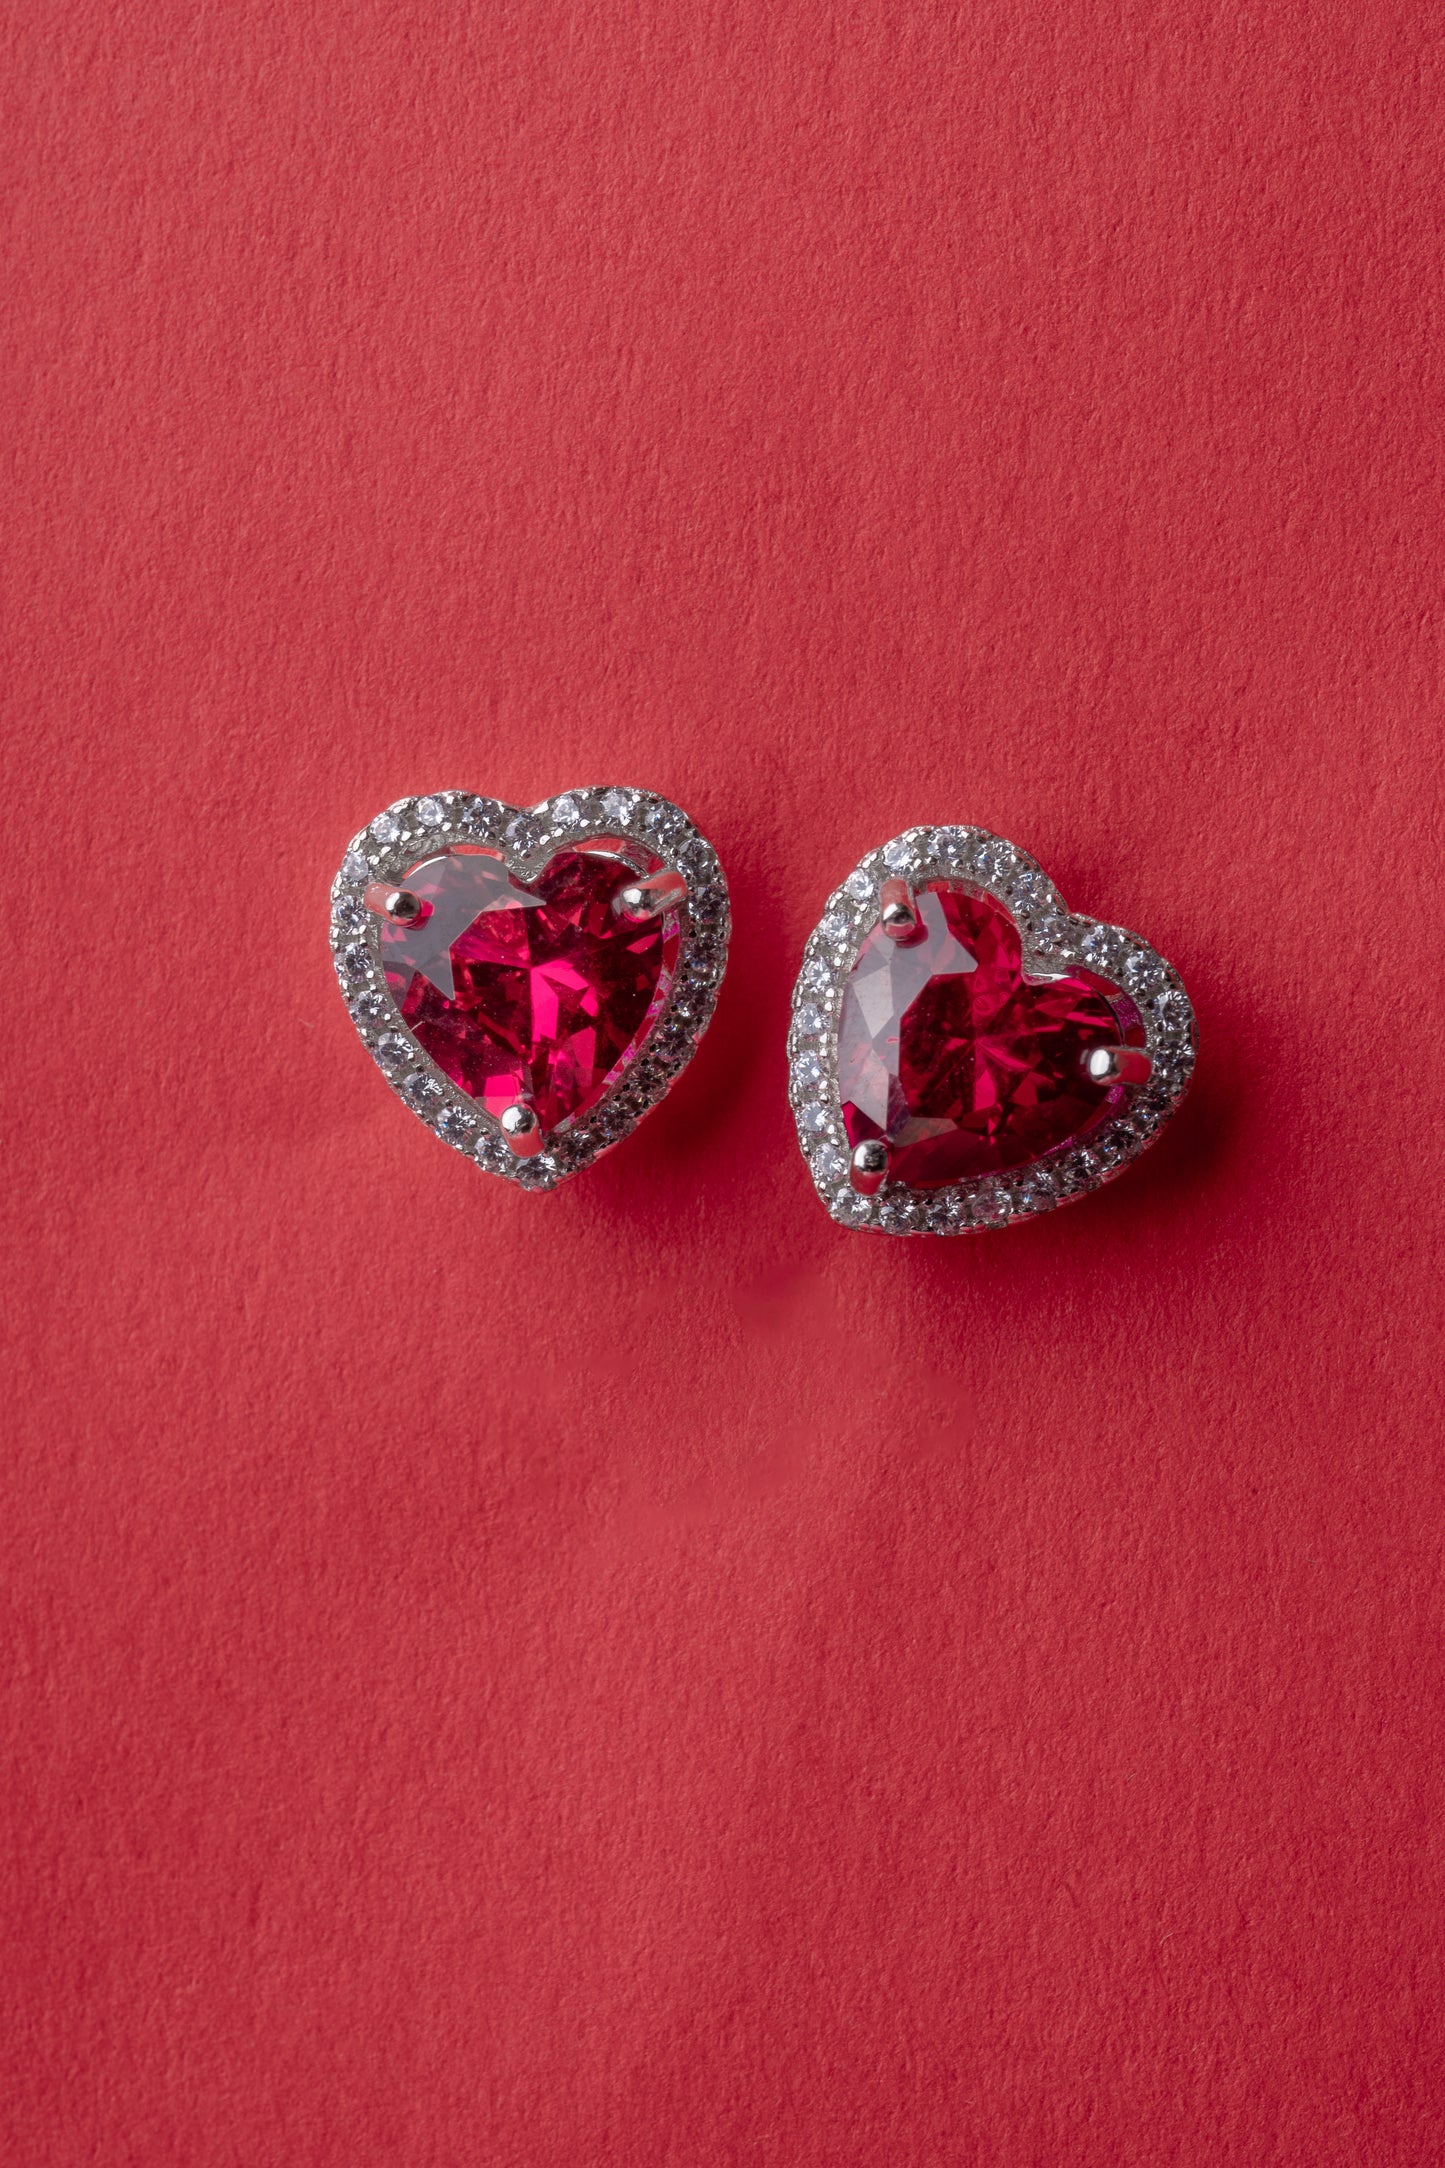 Ruby Heart Stud earrings